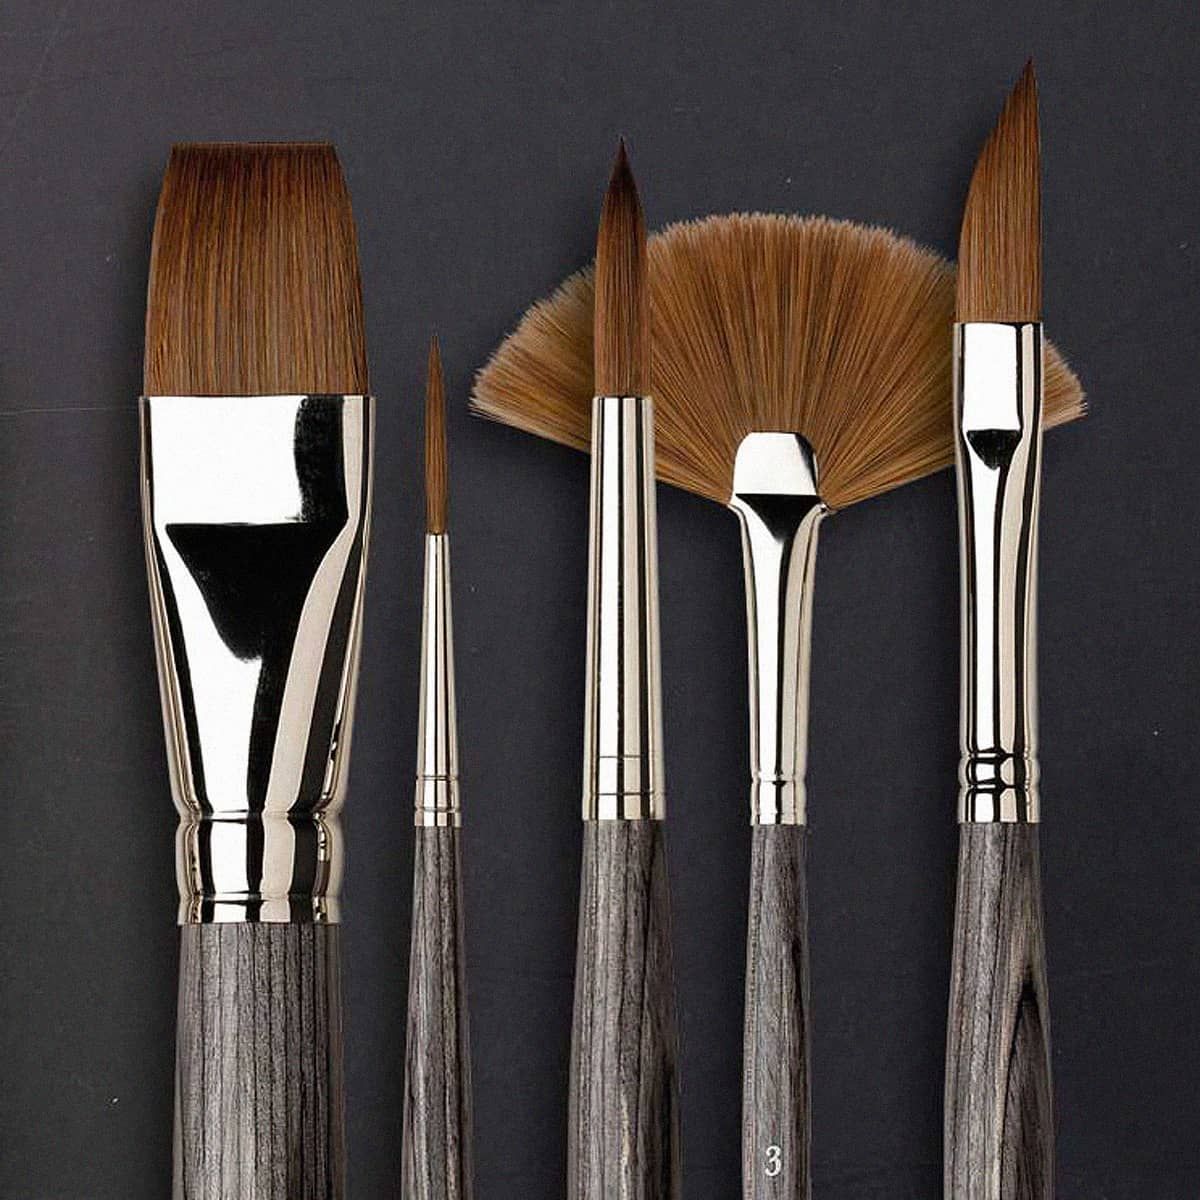 Da Vinci Colineo Series 5522 Synthetic Kolinsky Brush, Size 20 Flat